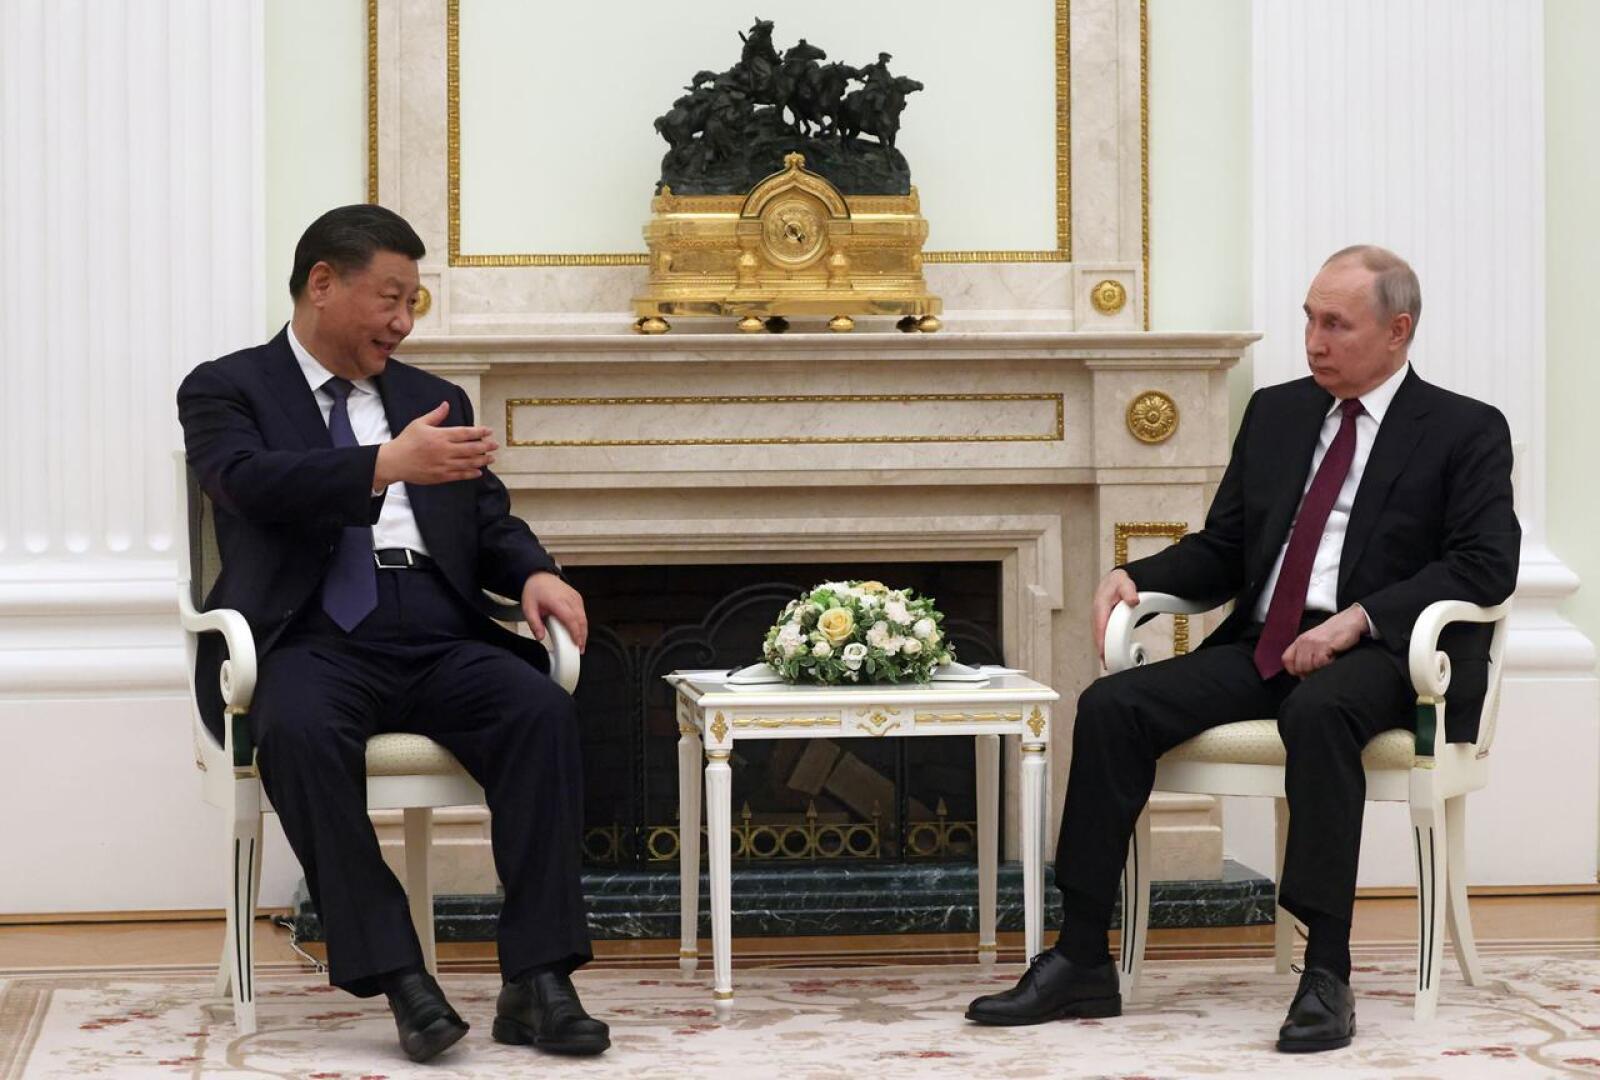 Kiinan presidentti Xi Jinping aloitti maanantaina kolmipäiväisen vierailunsa Moskovassa. Venäjän presidentti Vladimir Putin toimii isäntänä.